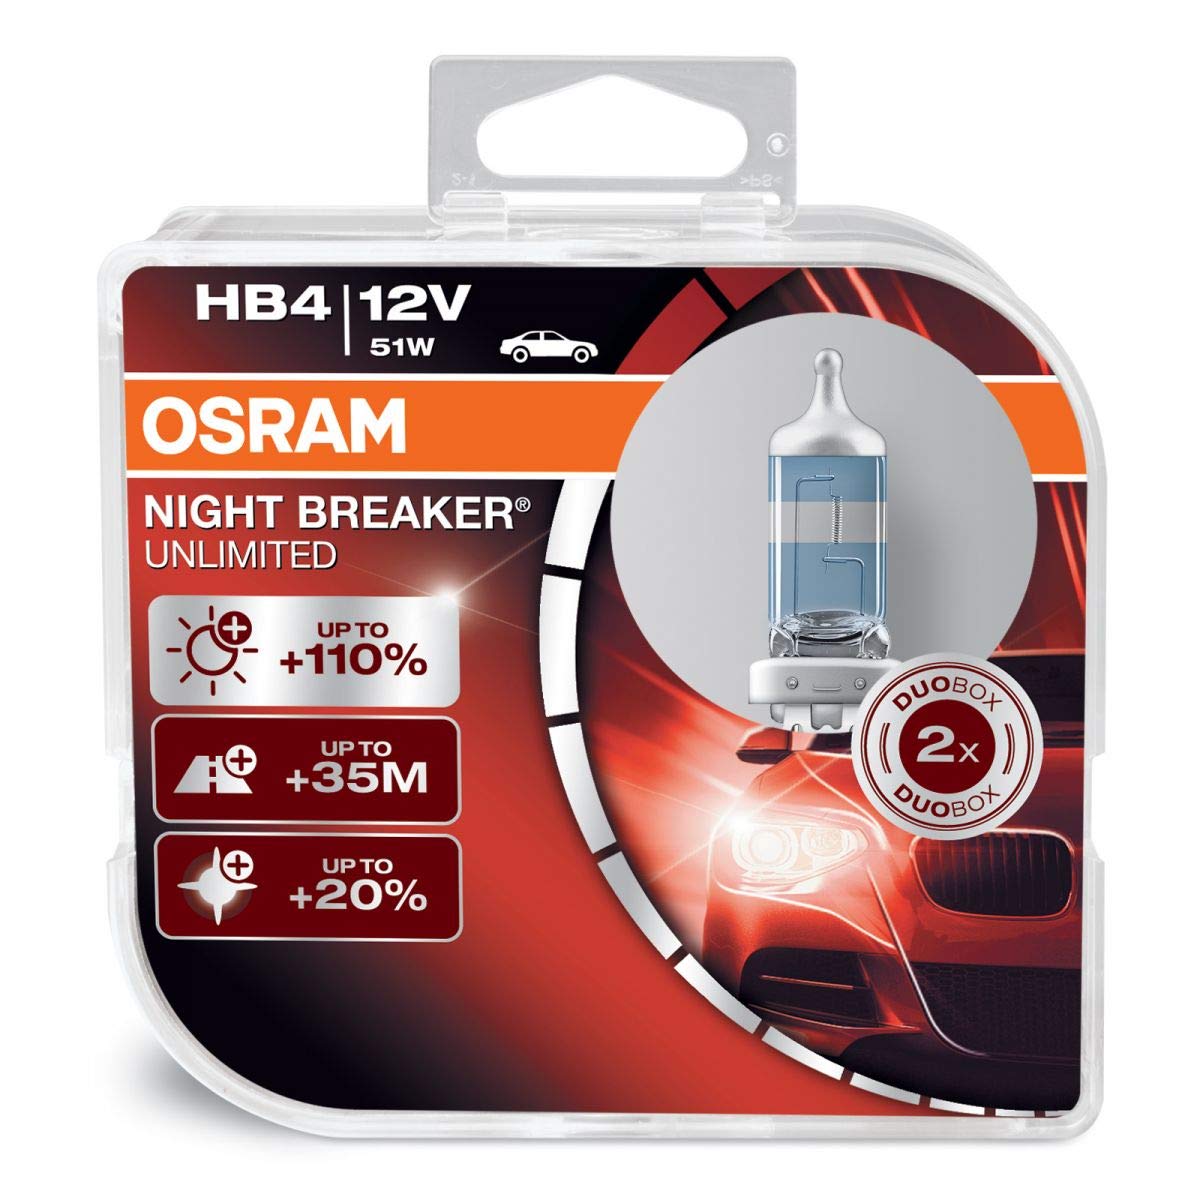 Bóng đèn Led Osram siêu sáng giá cạnh tranh